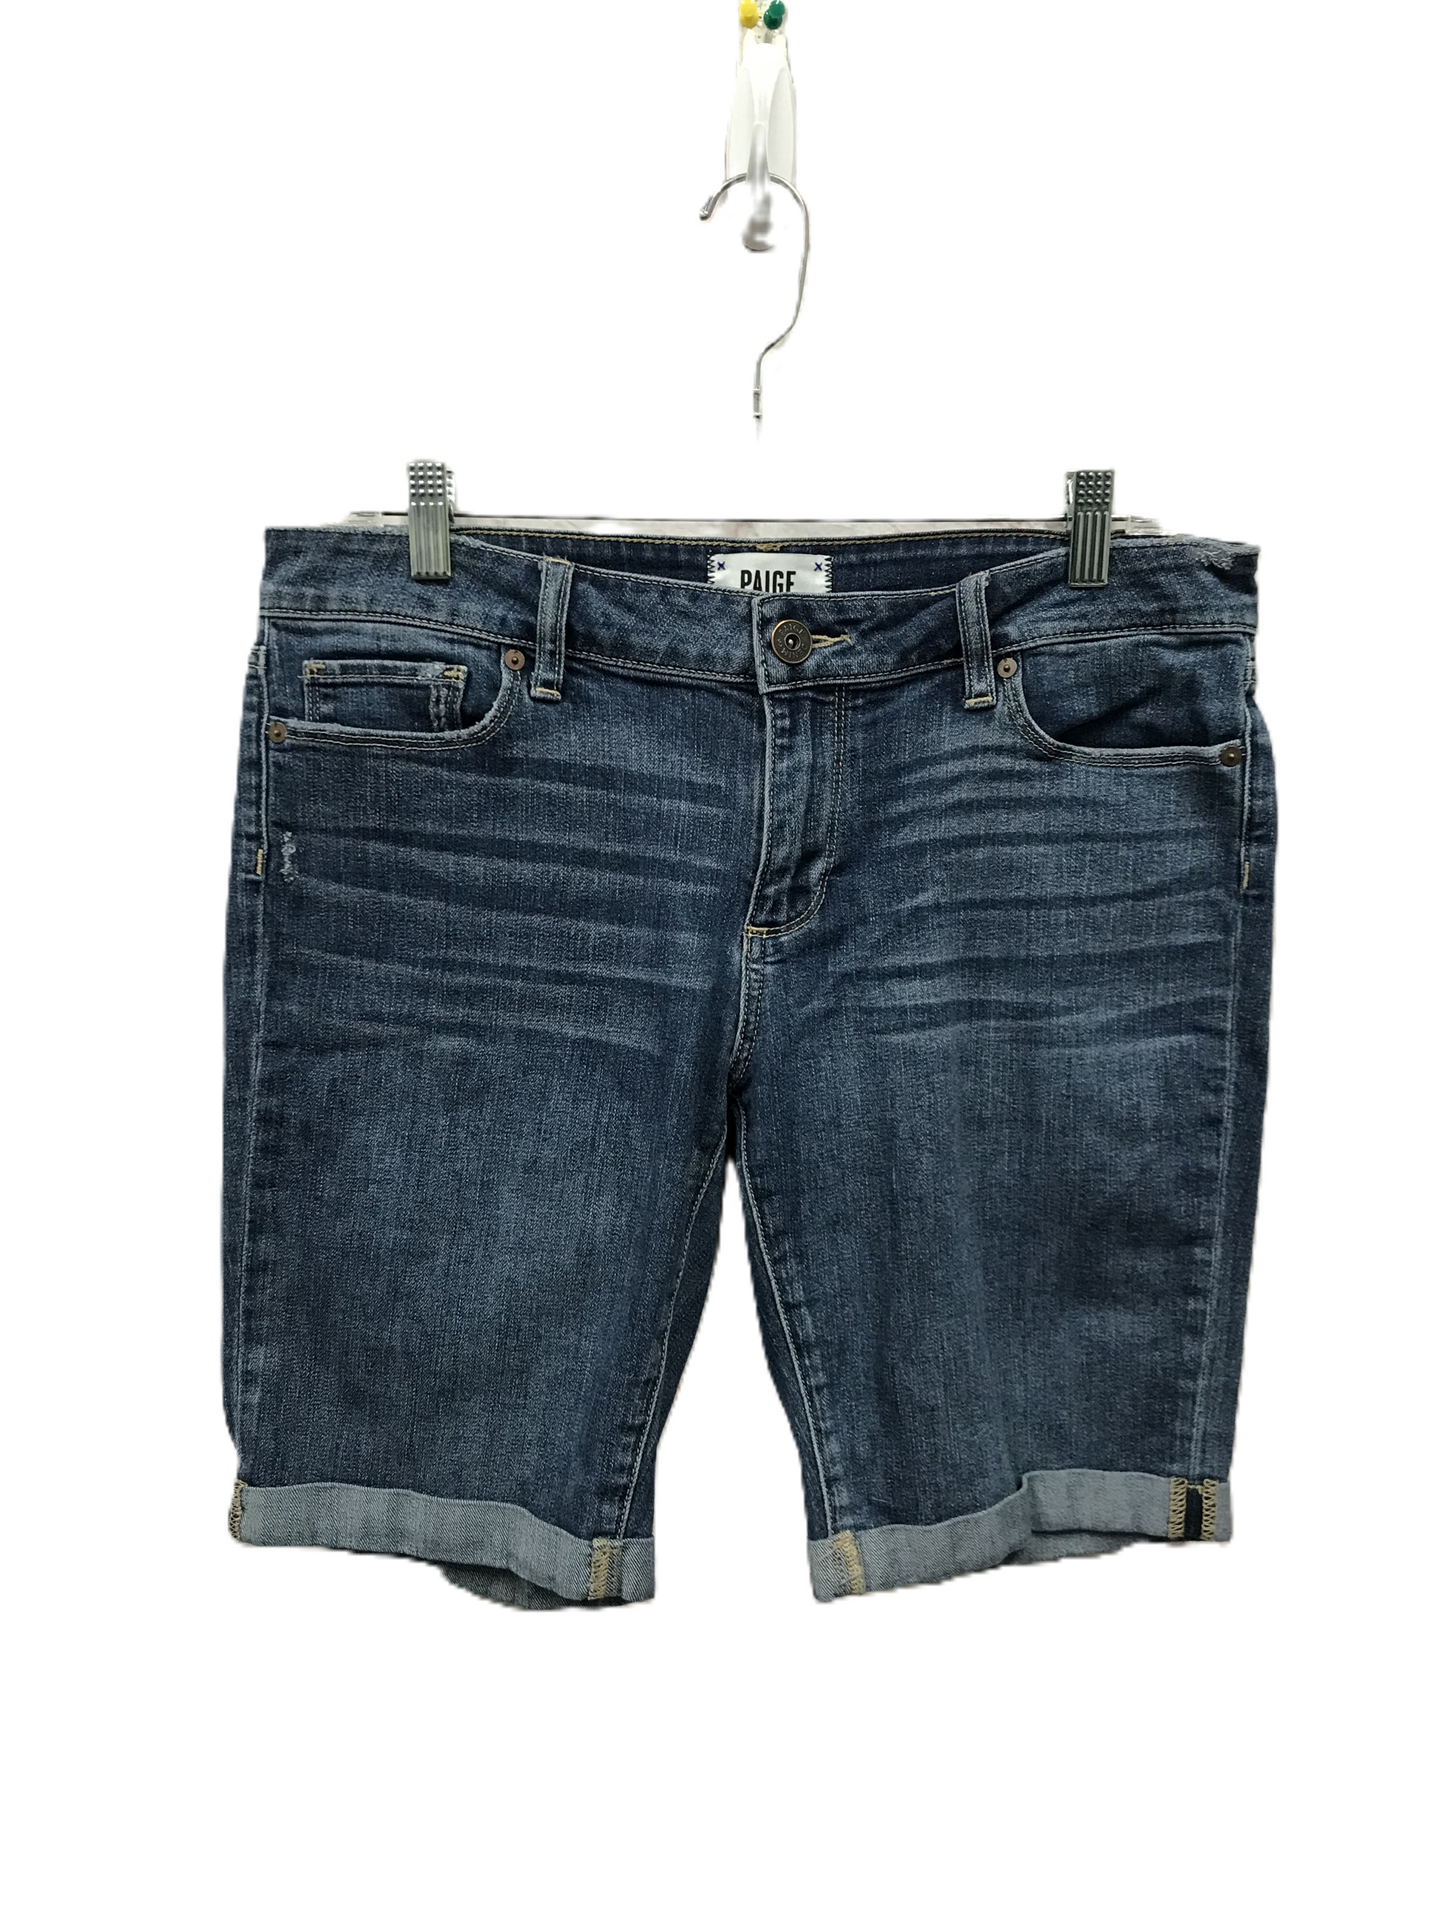 Blue Denim Shorts By Paige, Size: 10